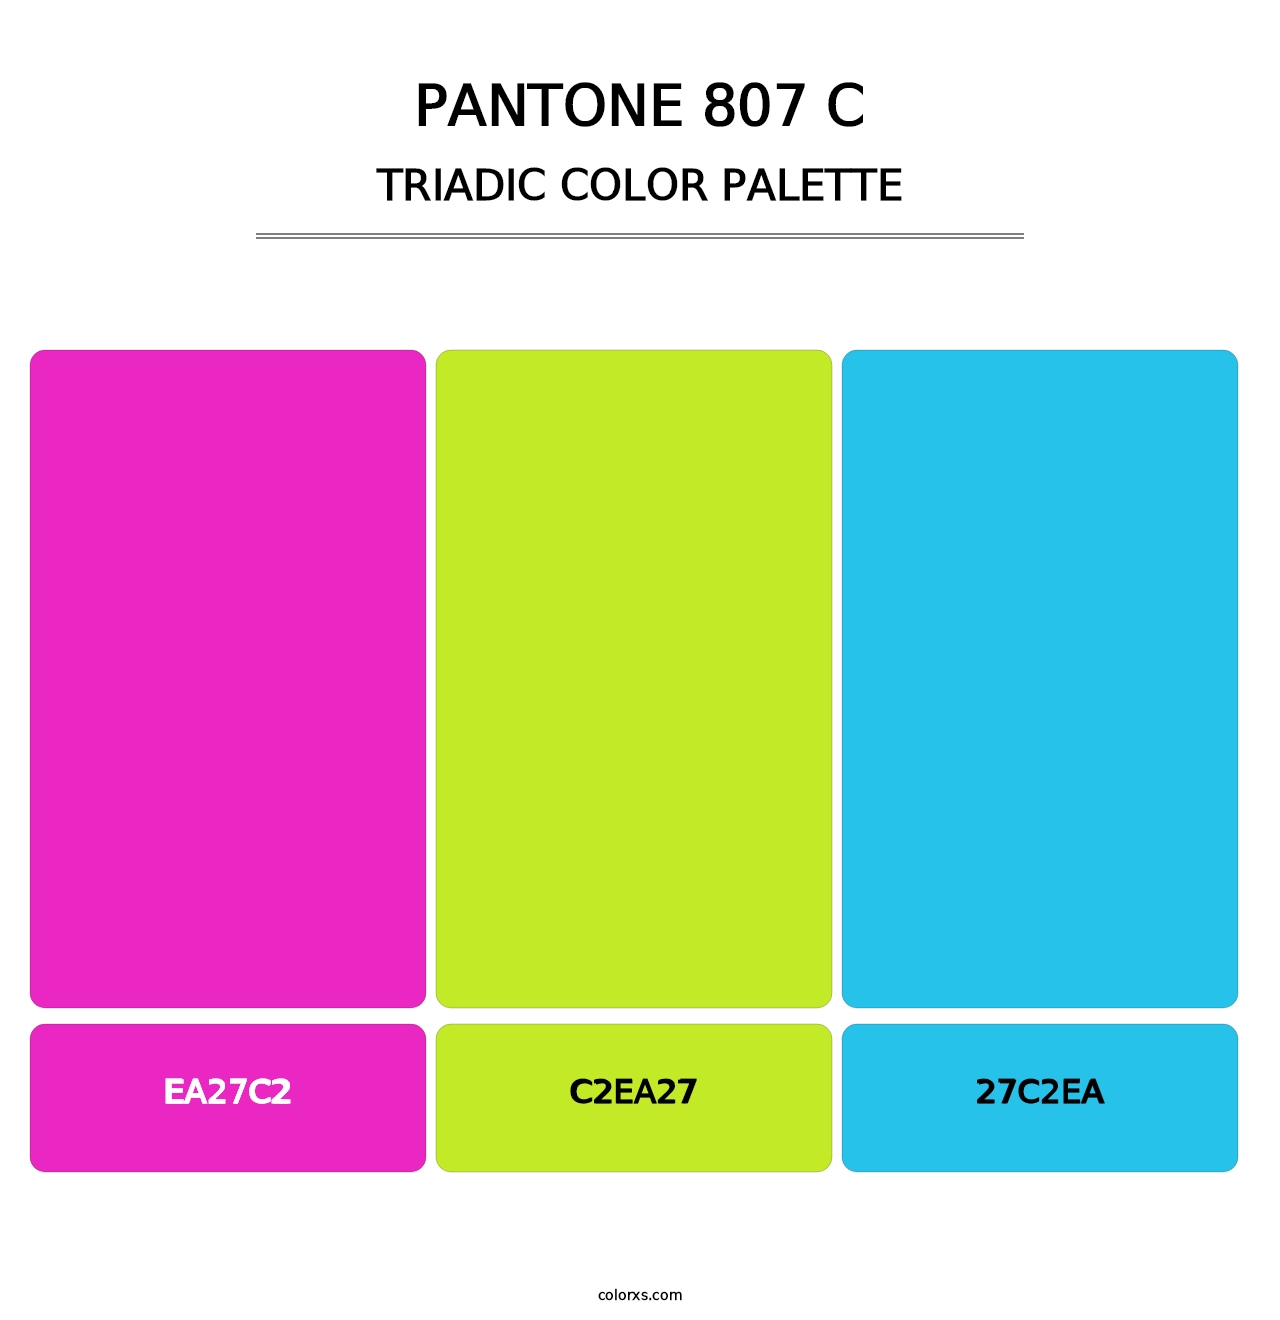 PANTONE 807 C - Triadic Color Palette